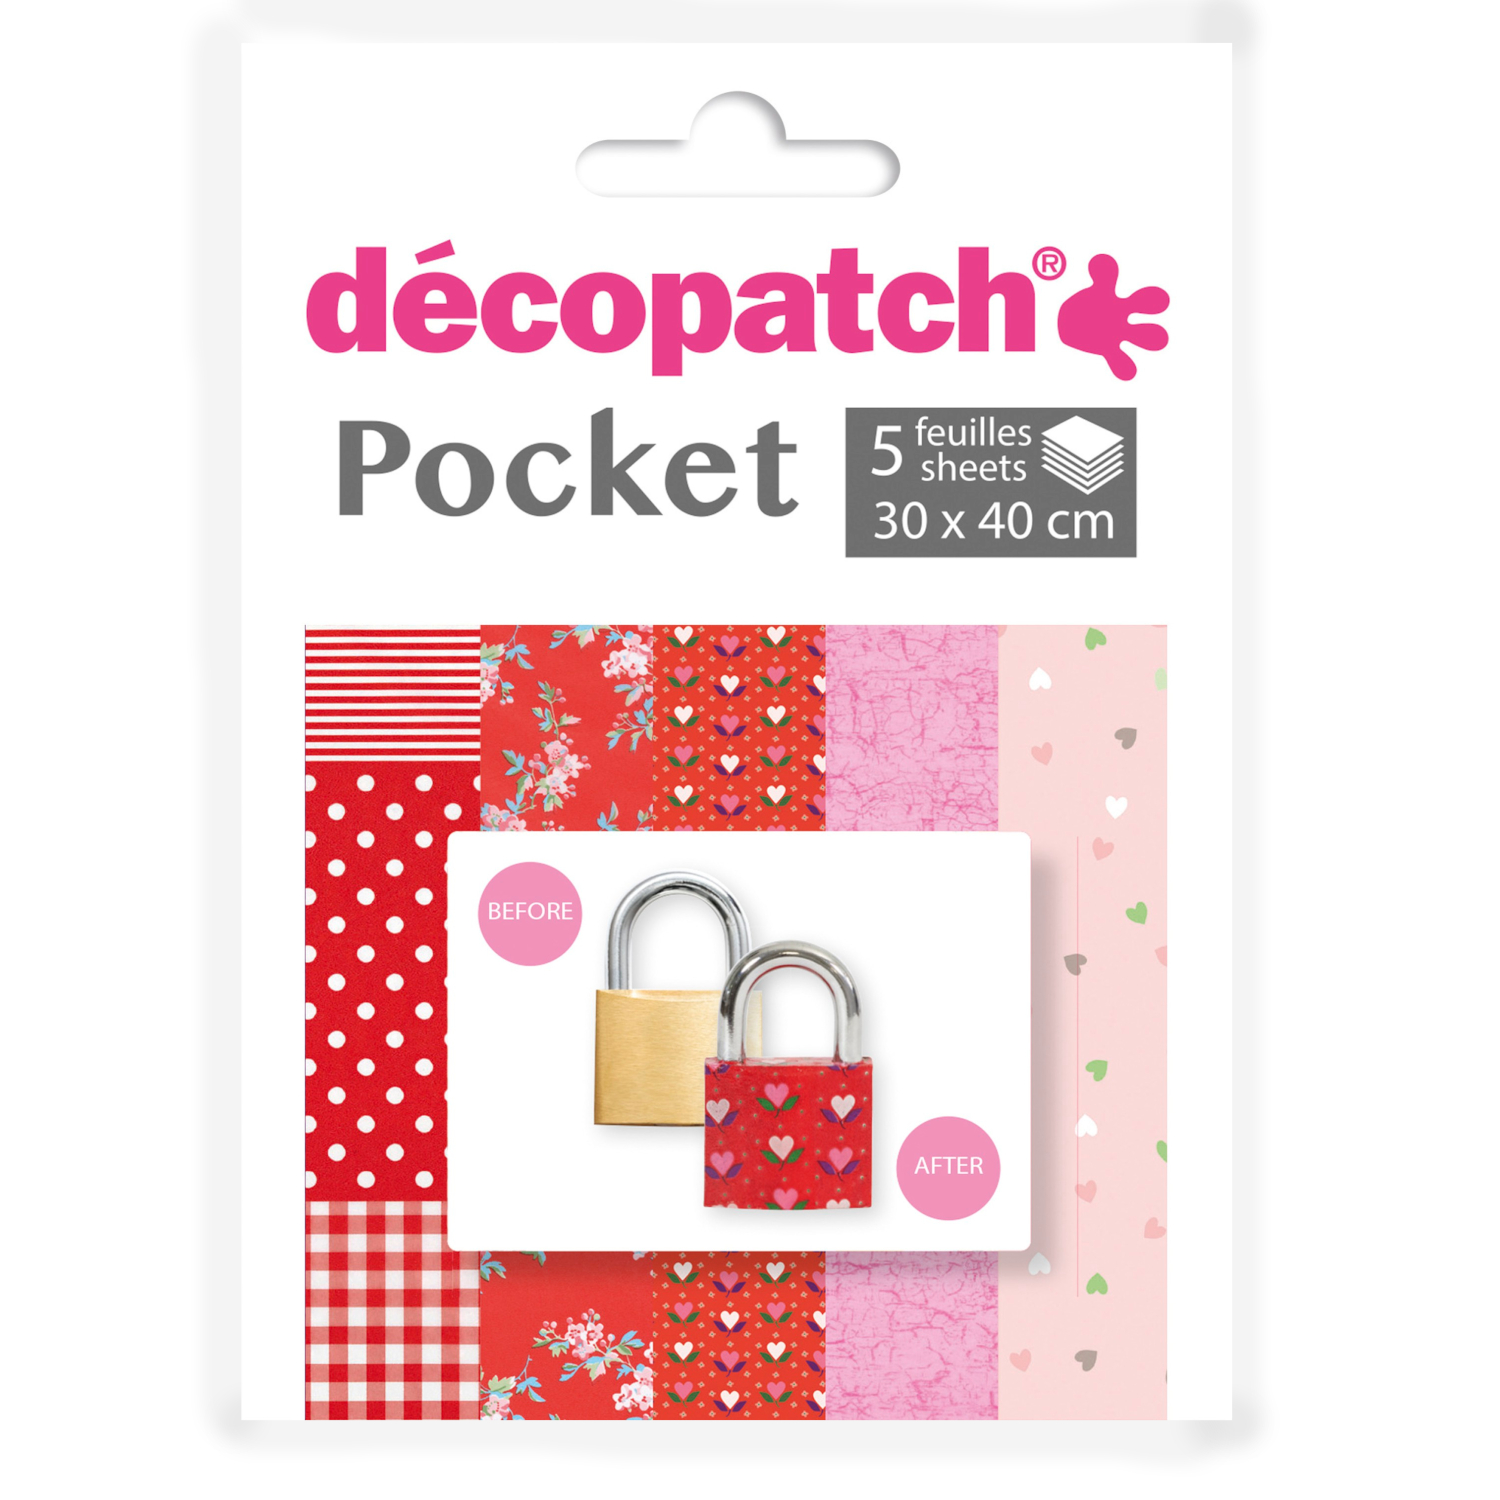 NEU Decoupage- / Decopatch-Papier Pocket-Sortierung, 5 Bogen 30 x 40 cm, Motive: 484, 658, 814, 299, 684